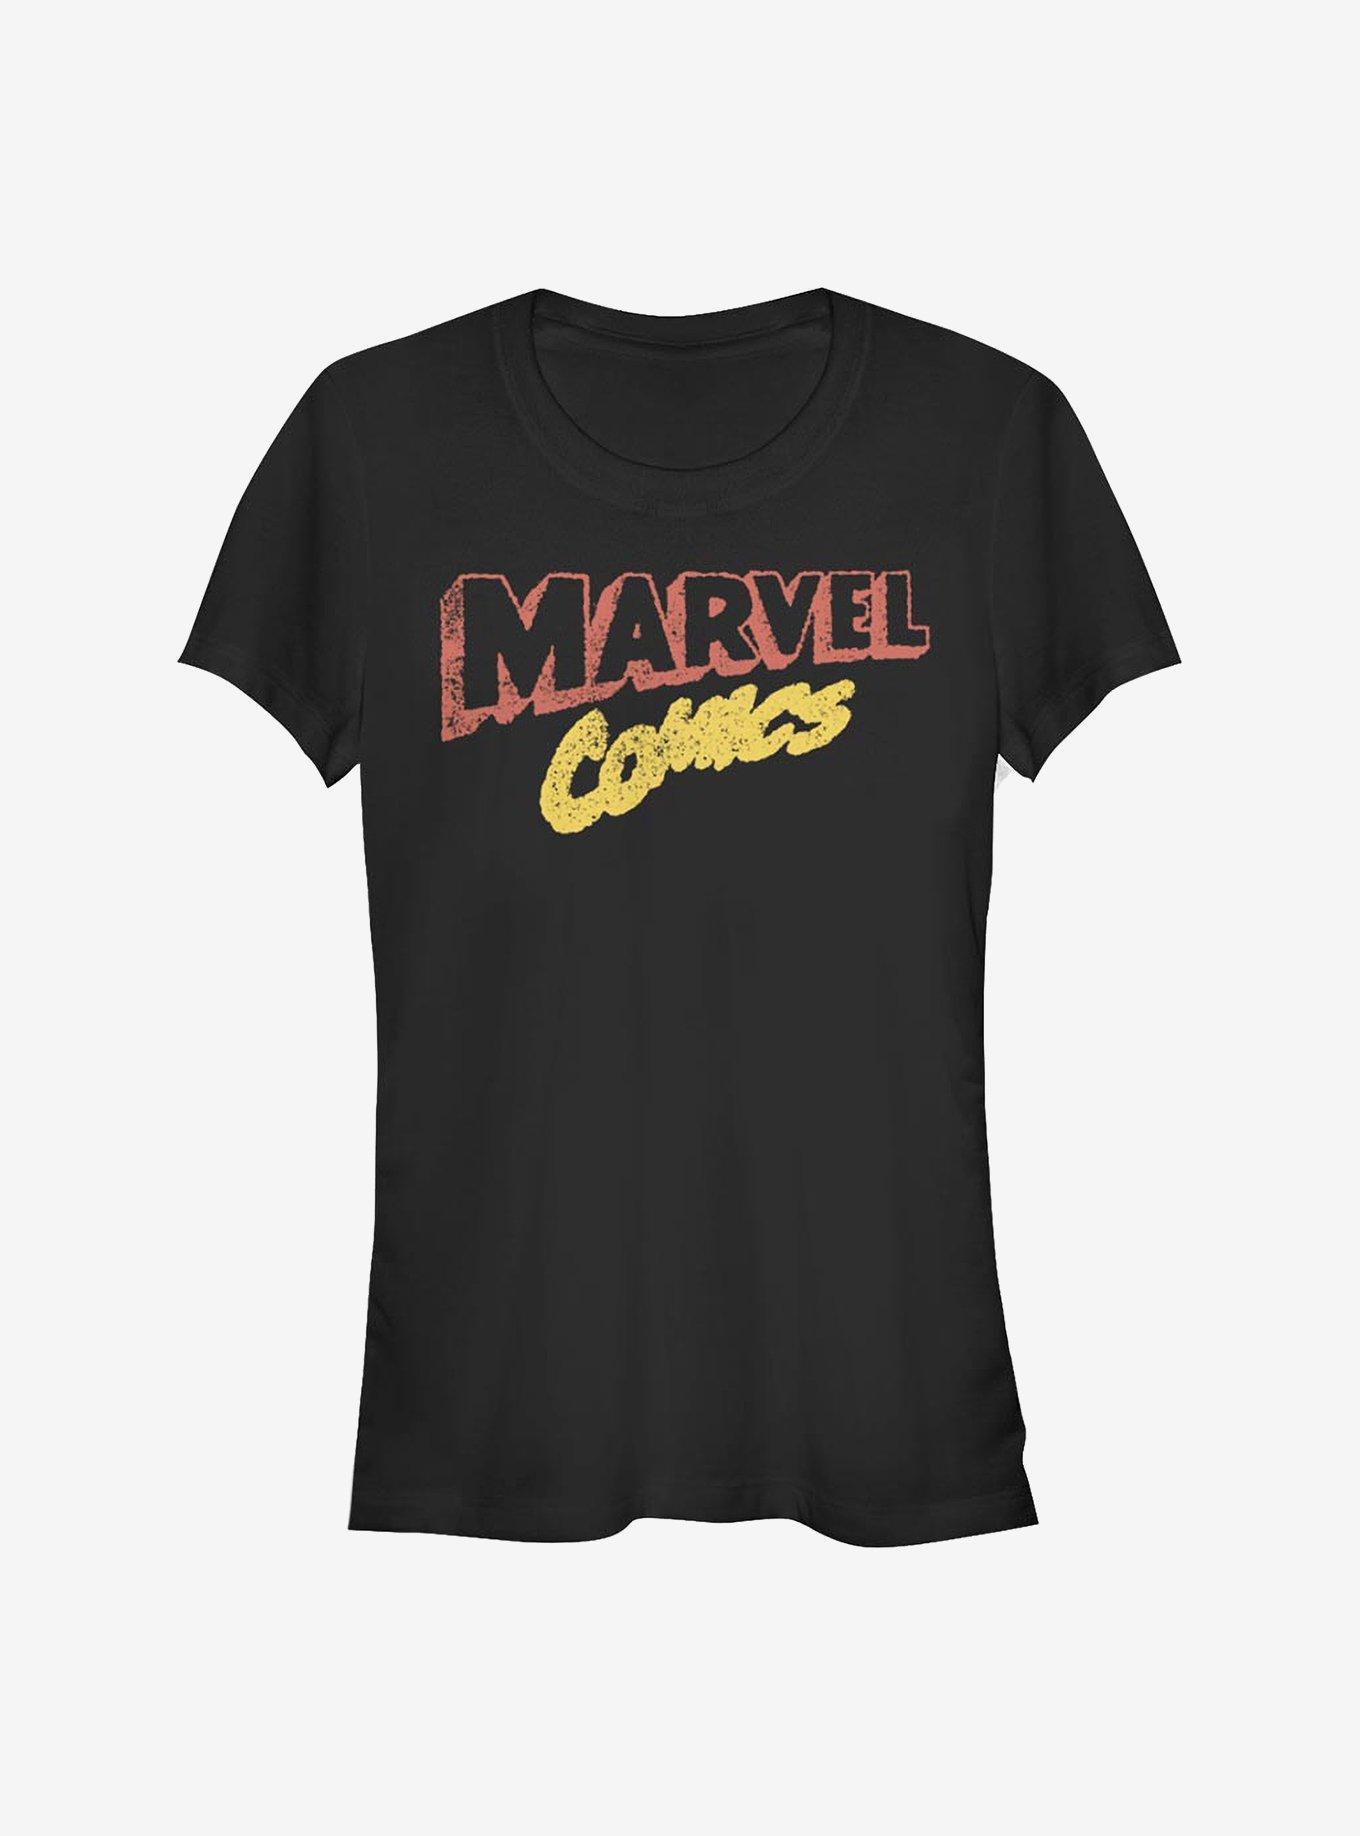 Marvel Comics Retro Logo Girls T-Shirt, BLACK, hi-res